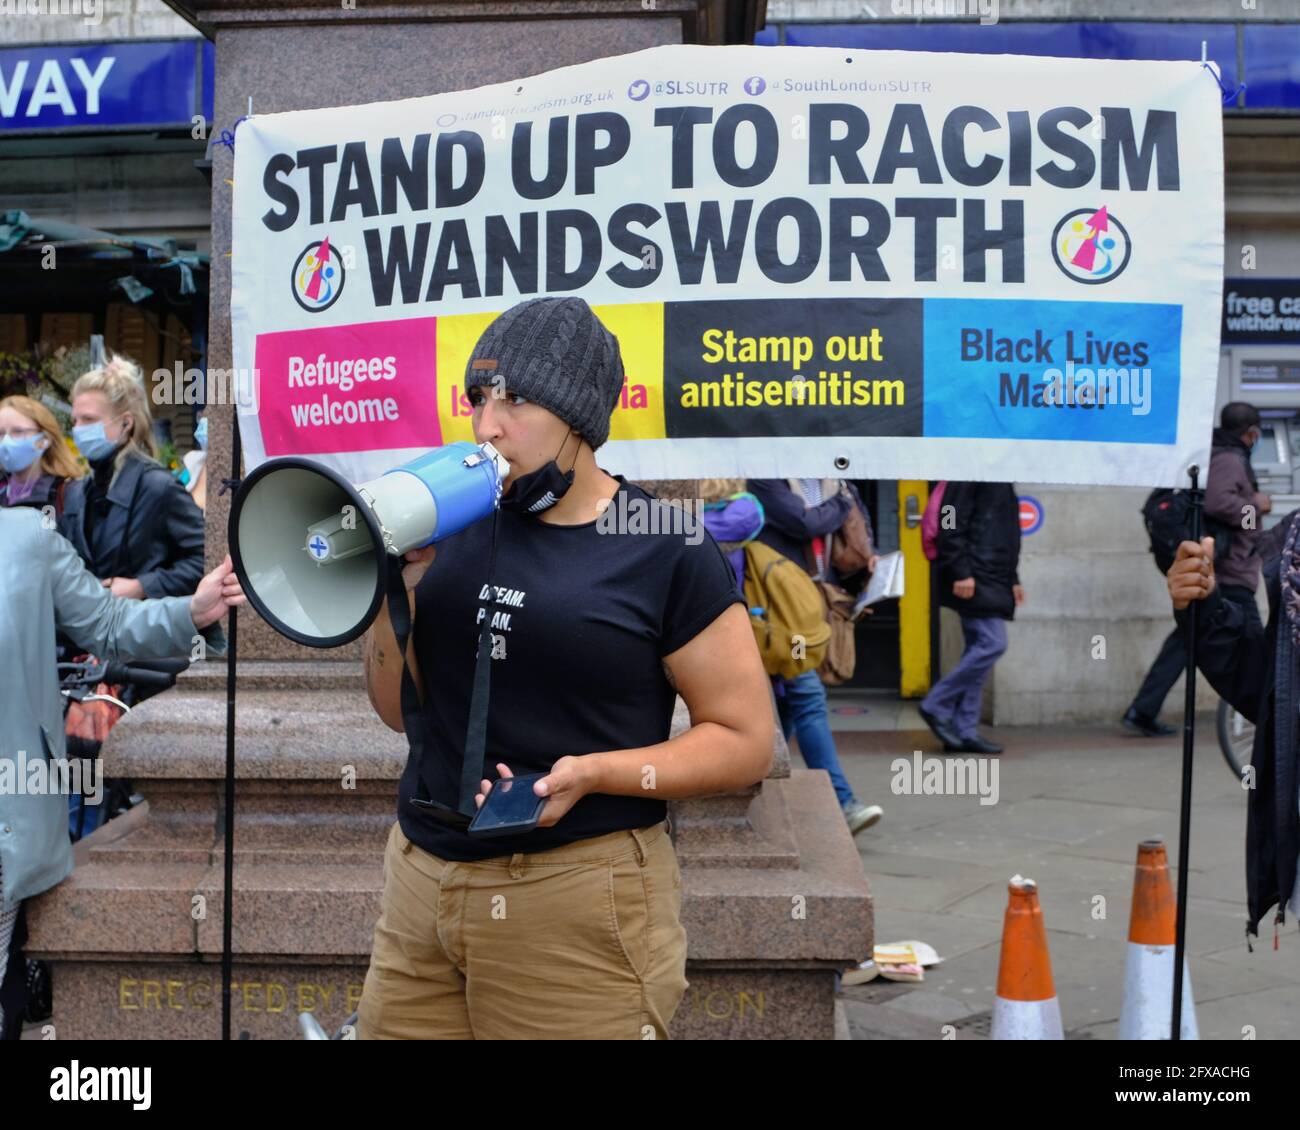 Londra, Regno Unito. 25/05/21. Gli attivisti anti-razzismo, compresi i consiglieri locali, segnano la morte di George Floyd un anno dopo con discorsi e interventi. Foto Stock